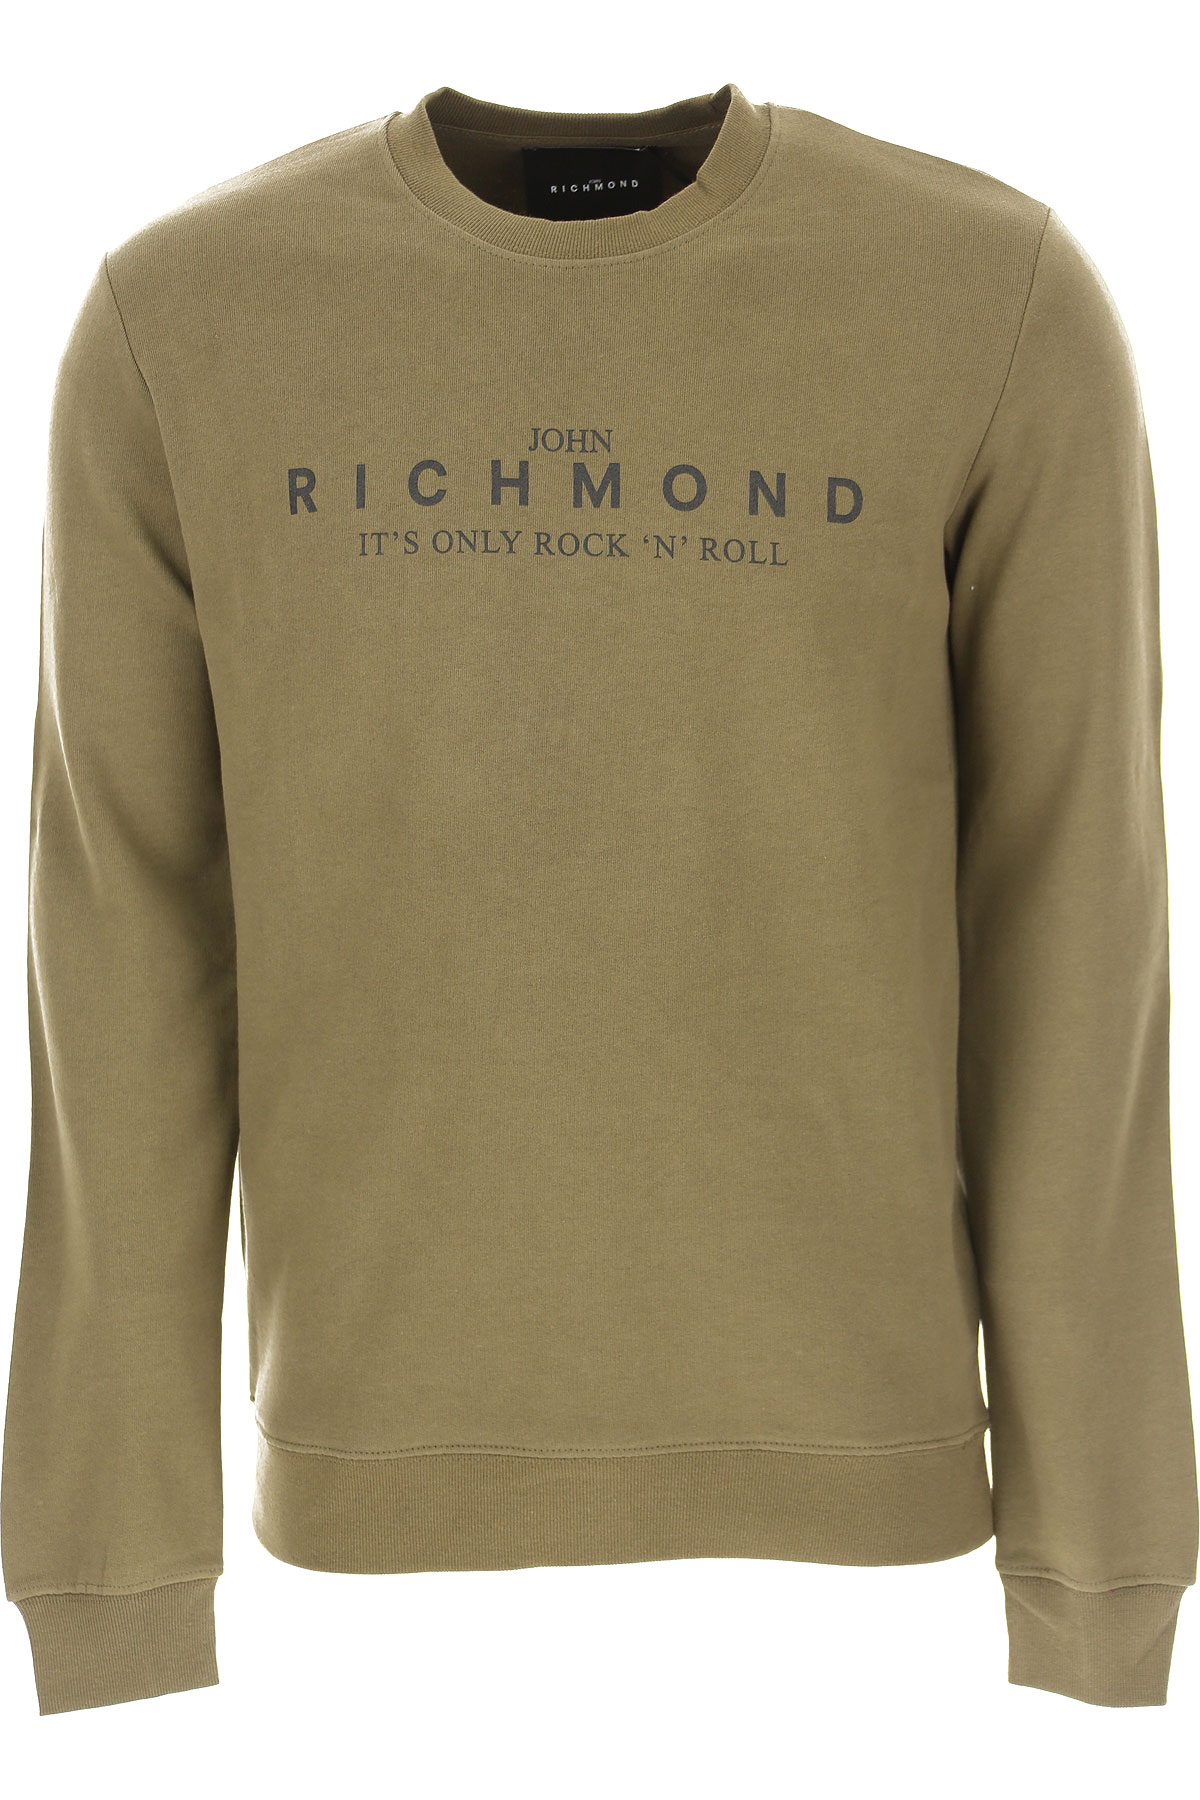 Richmond Sweatshirt für Herren, Kapuzenpulli, Hoodie, Sweats Günstig im Sale, Khaki, Baumwolle, 2017, M S XL